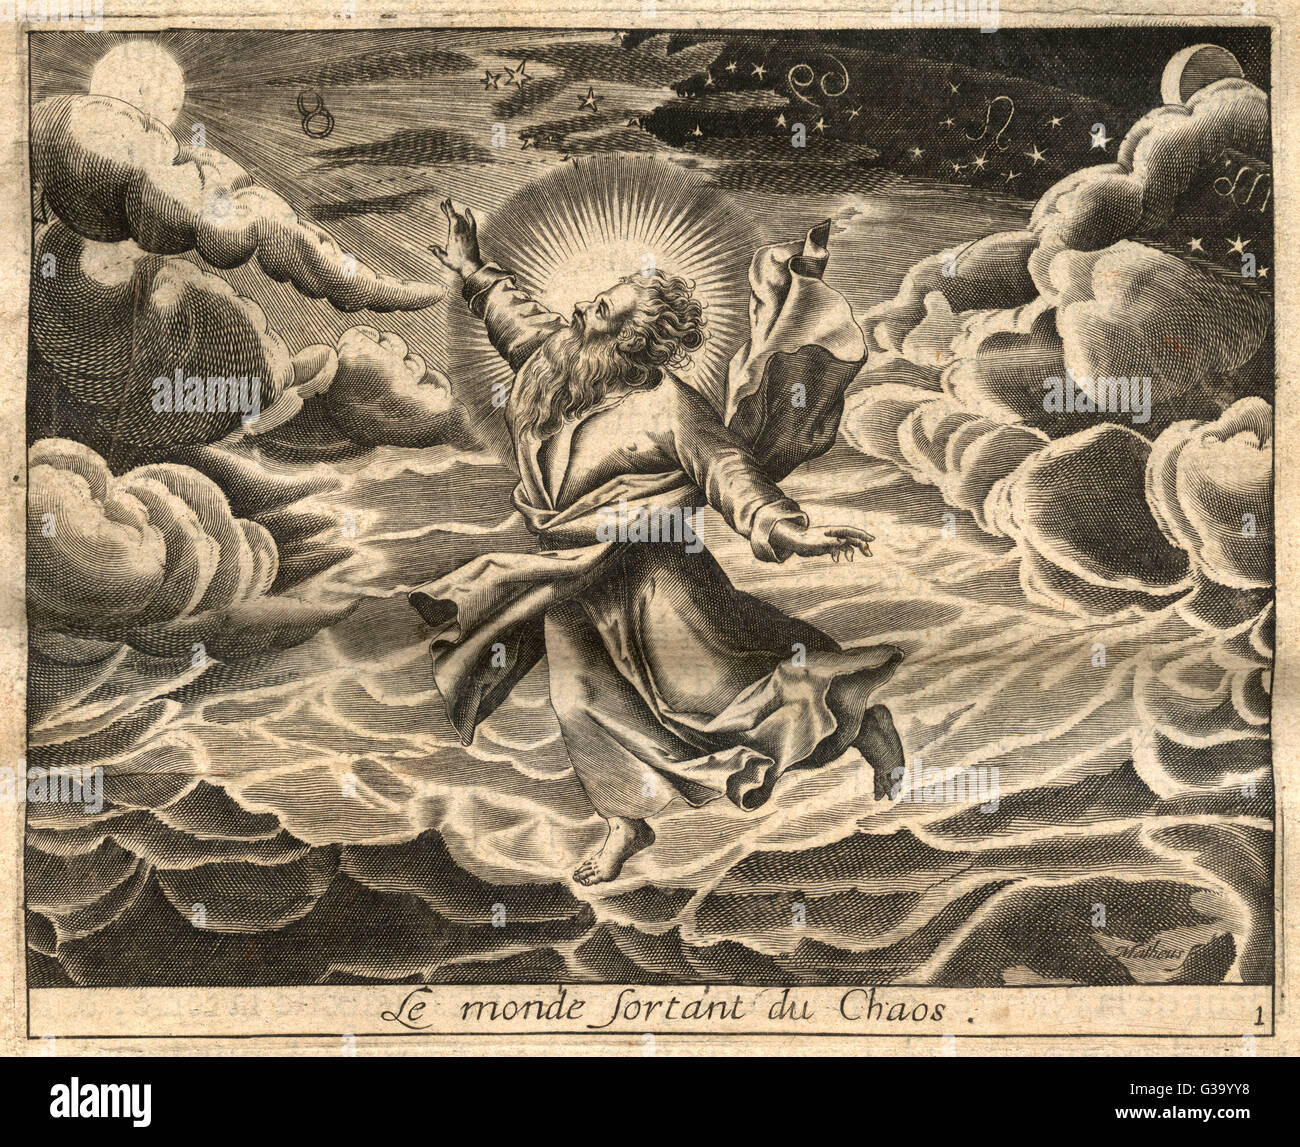 Dio della terra immagini e fotografie stock ad alta risoluzione - Alamy